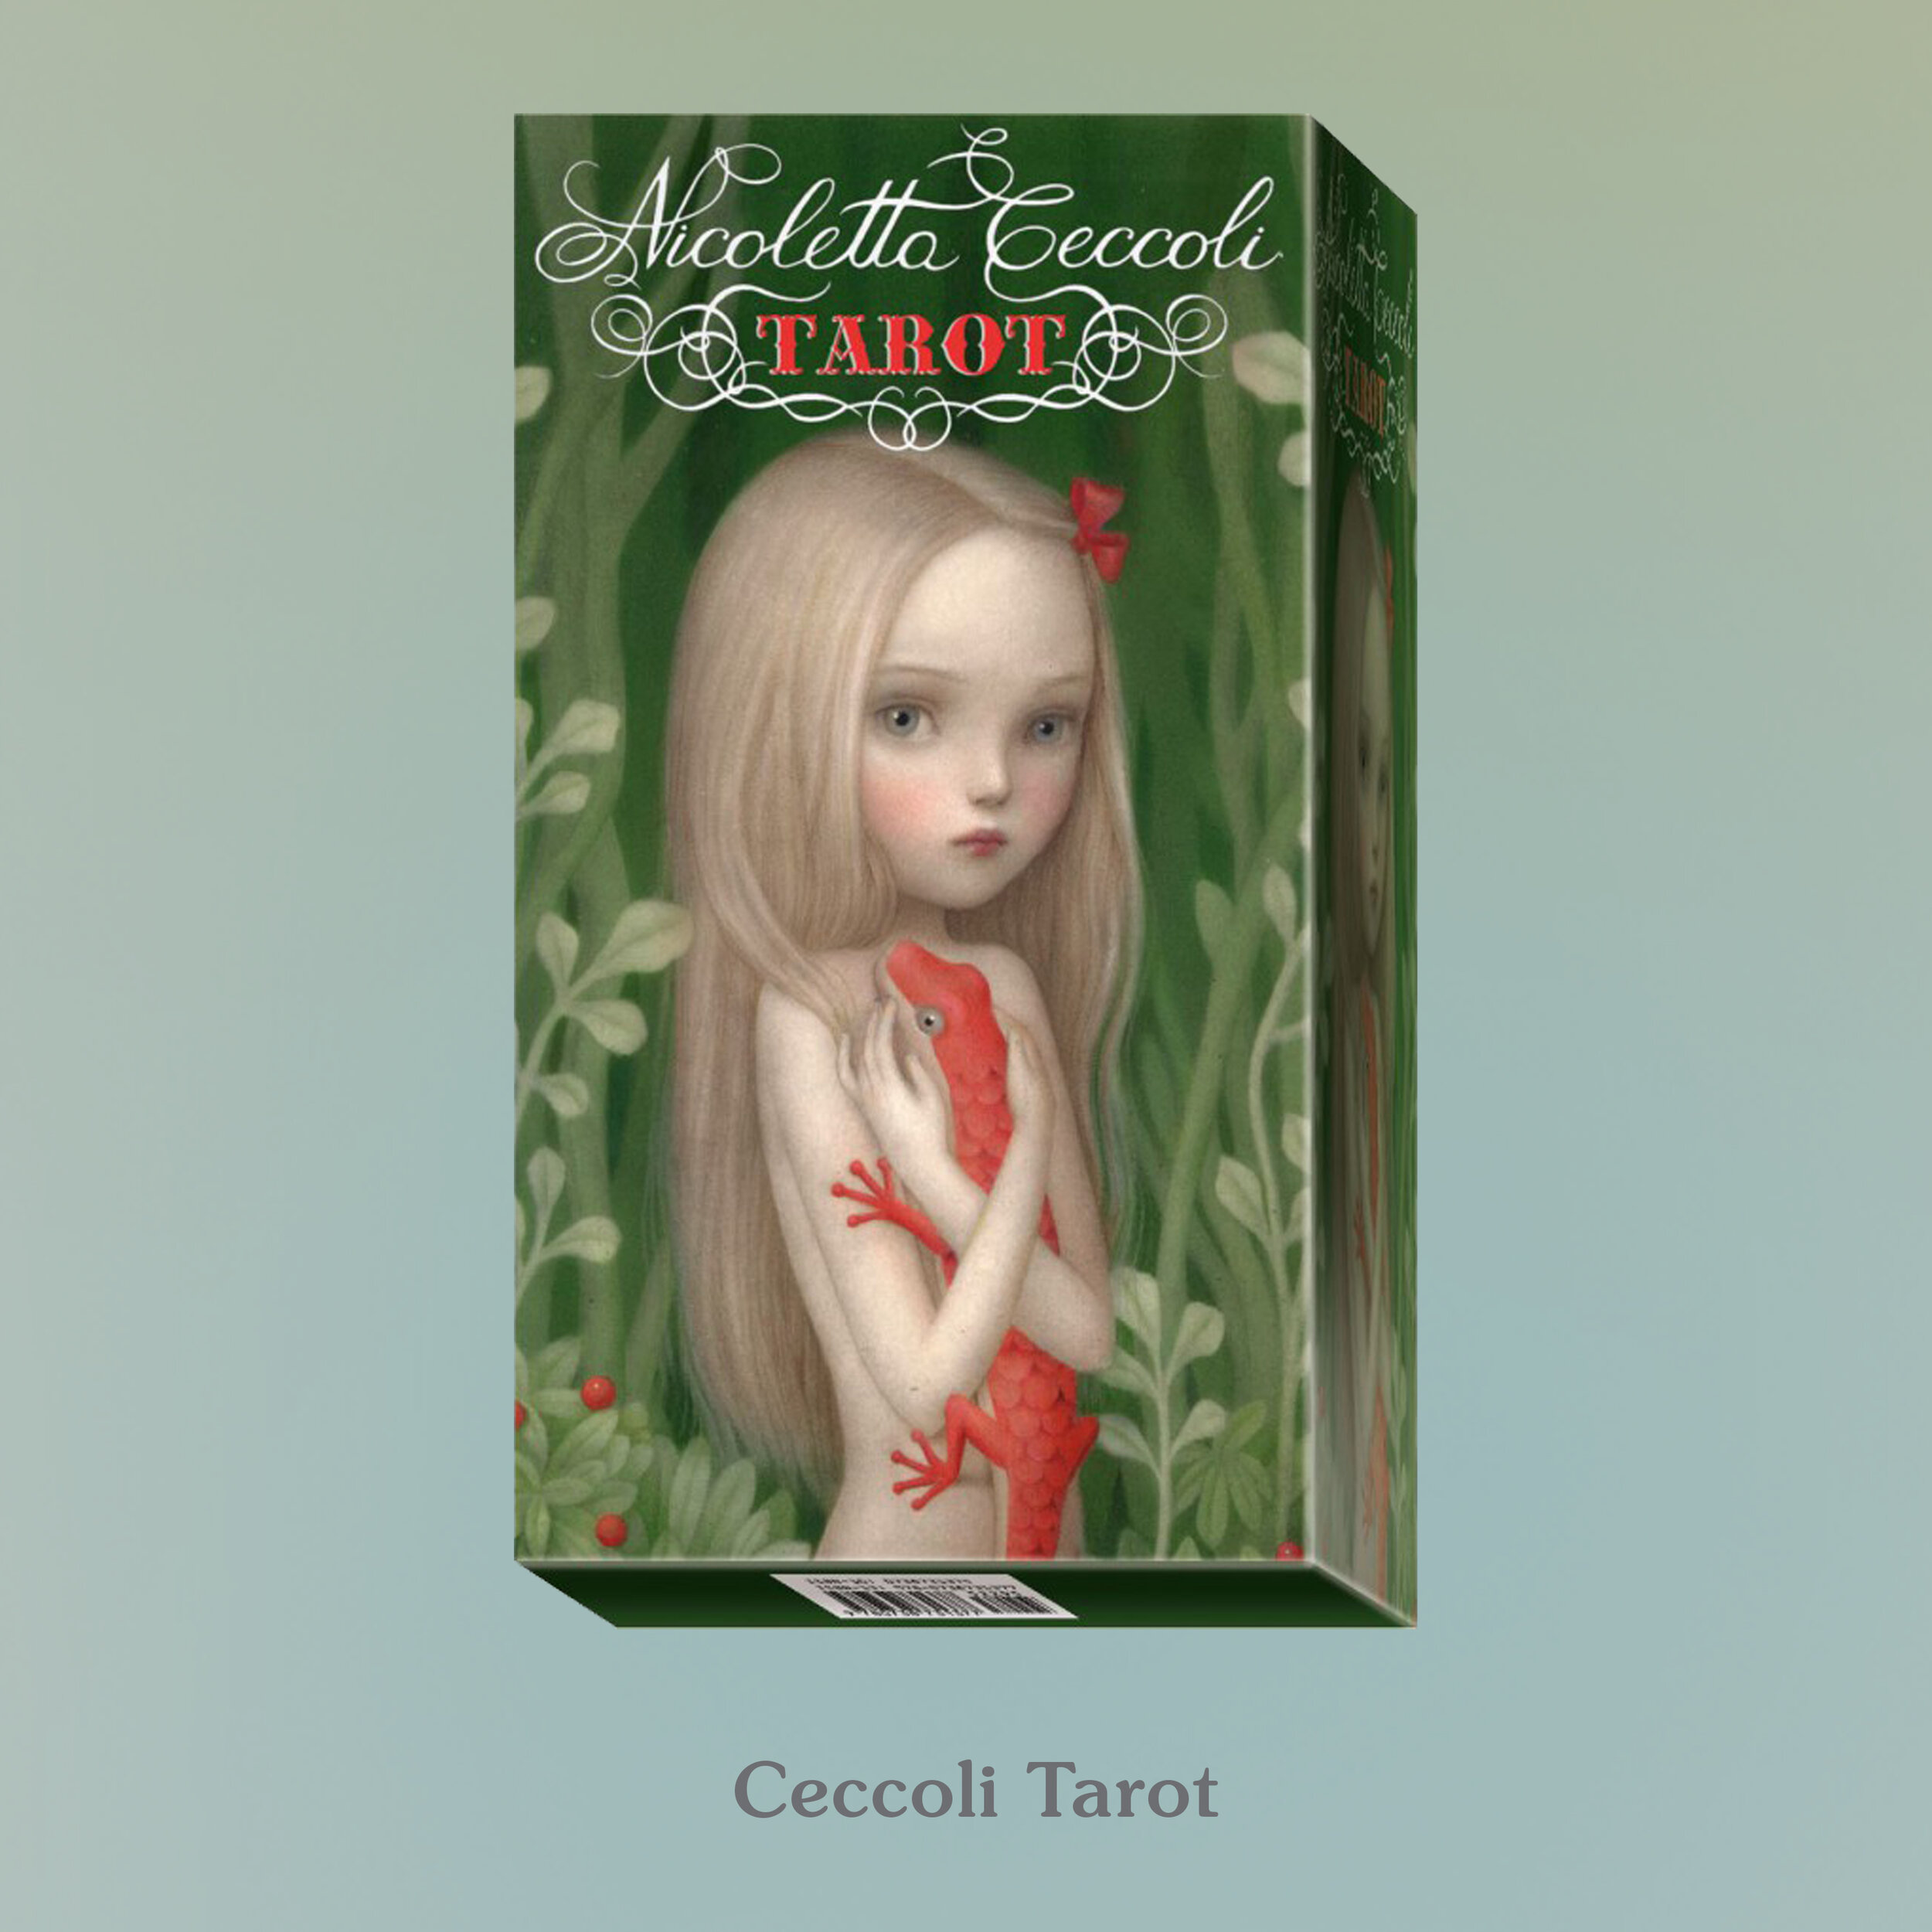 Ceccoli Tarot